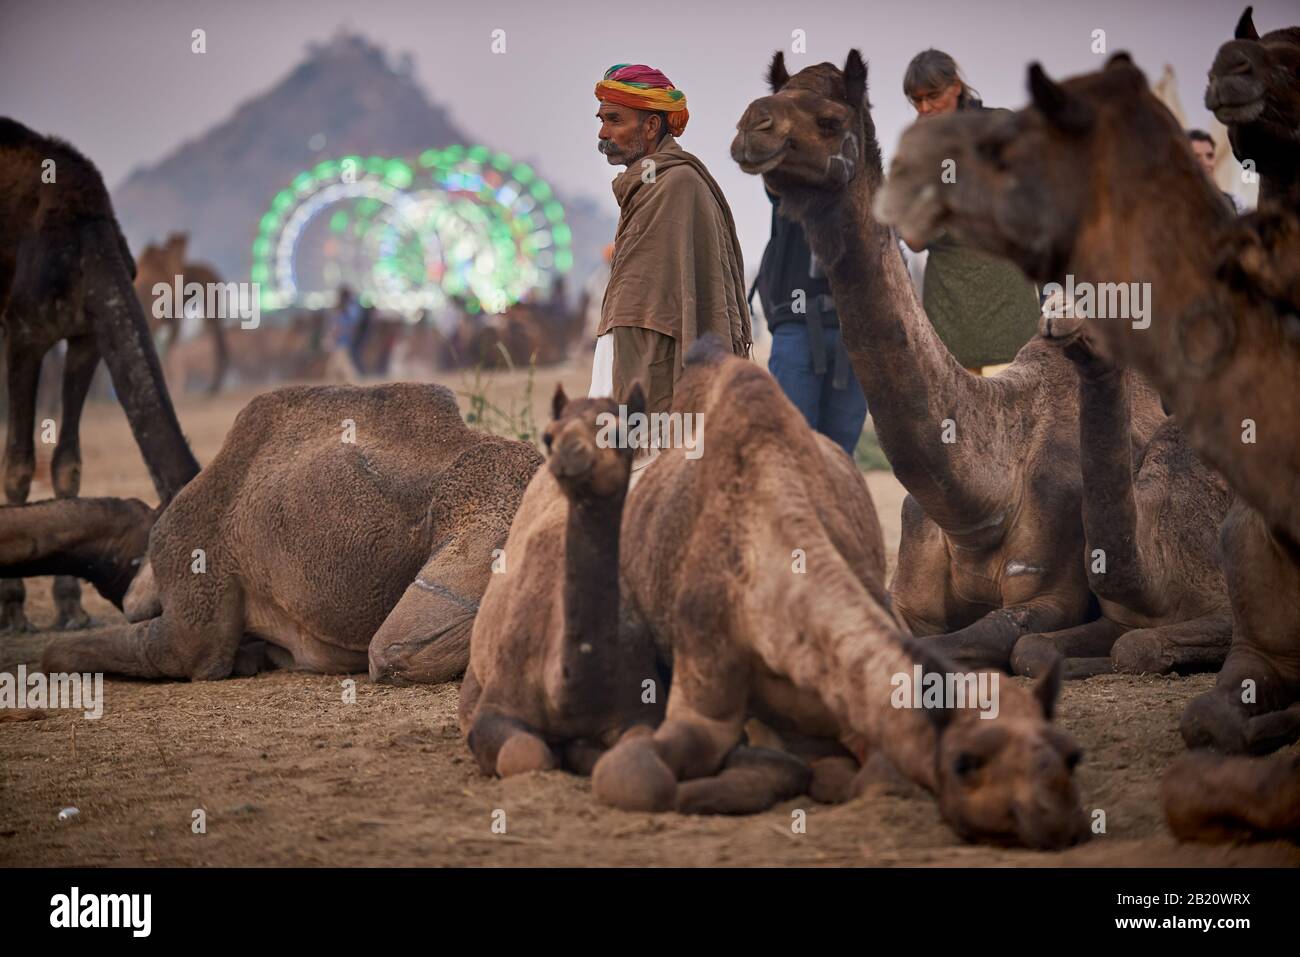 Hombres nómadas de la tribu con turbans tradicionales, camello y feria de ganado, Puskar Mela, Pushkar, Rajasthan, India Foto de stock